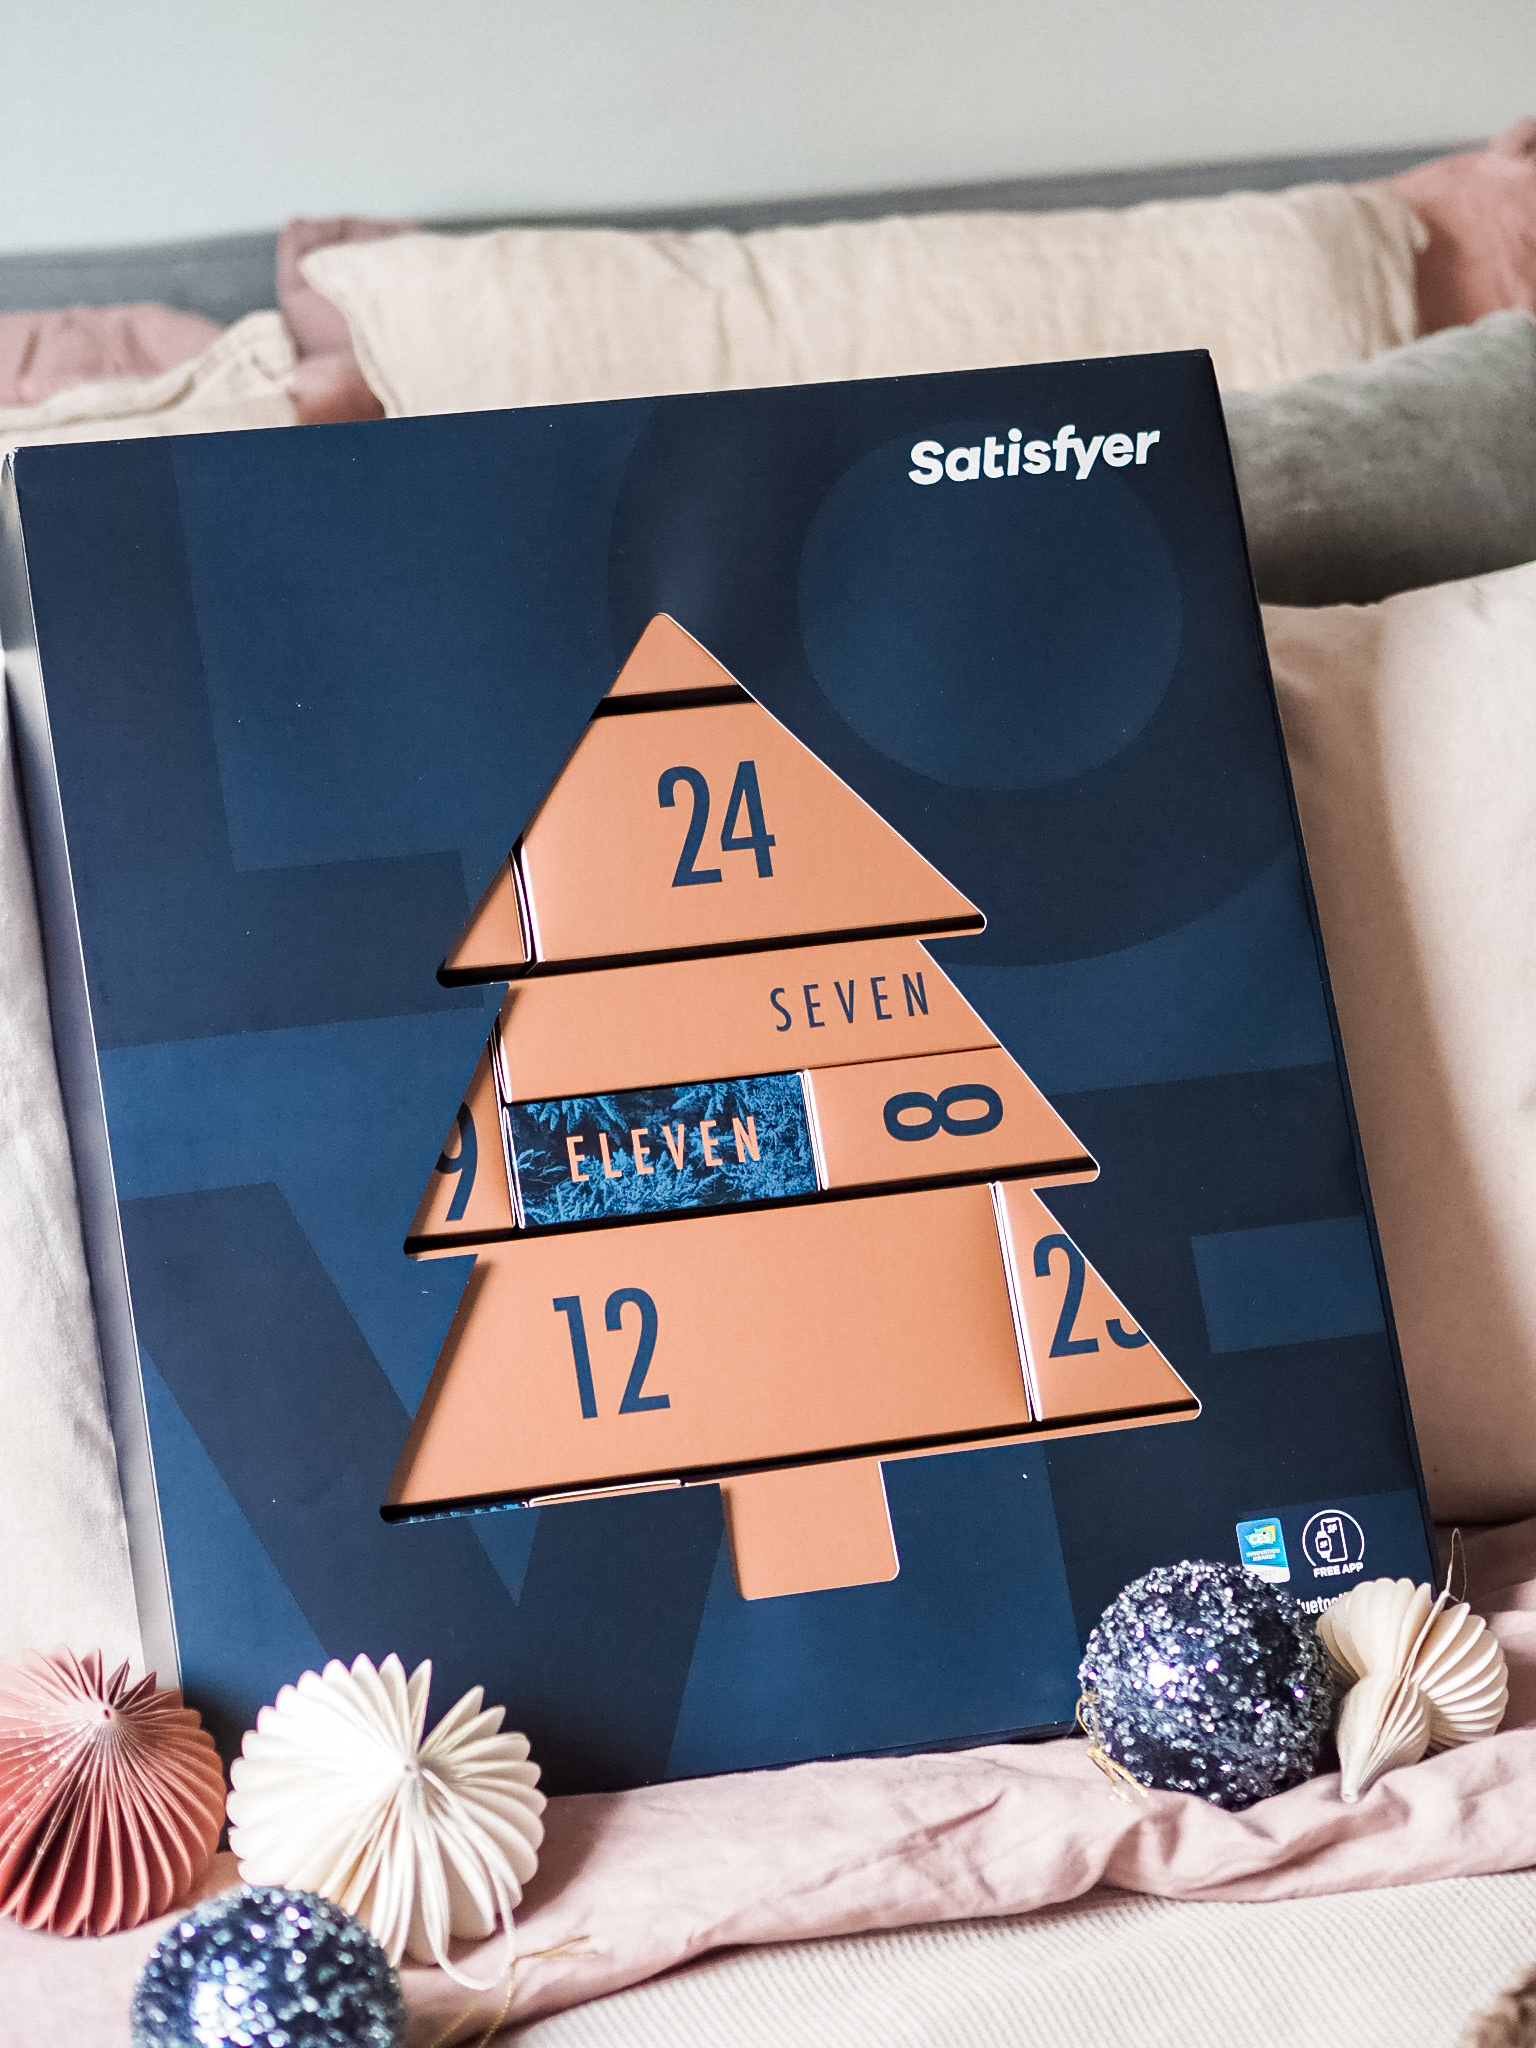 Satisfyer kalenteri on tummansininen. Päälli pahvissa on kuusen muotoinen aukko, josta näkee osan pronssin värisistä luukuista. Ympärillä koristeena joulupalloja.